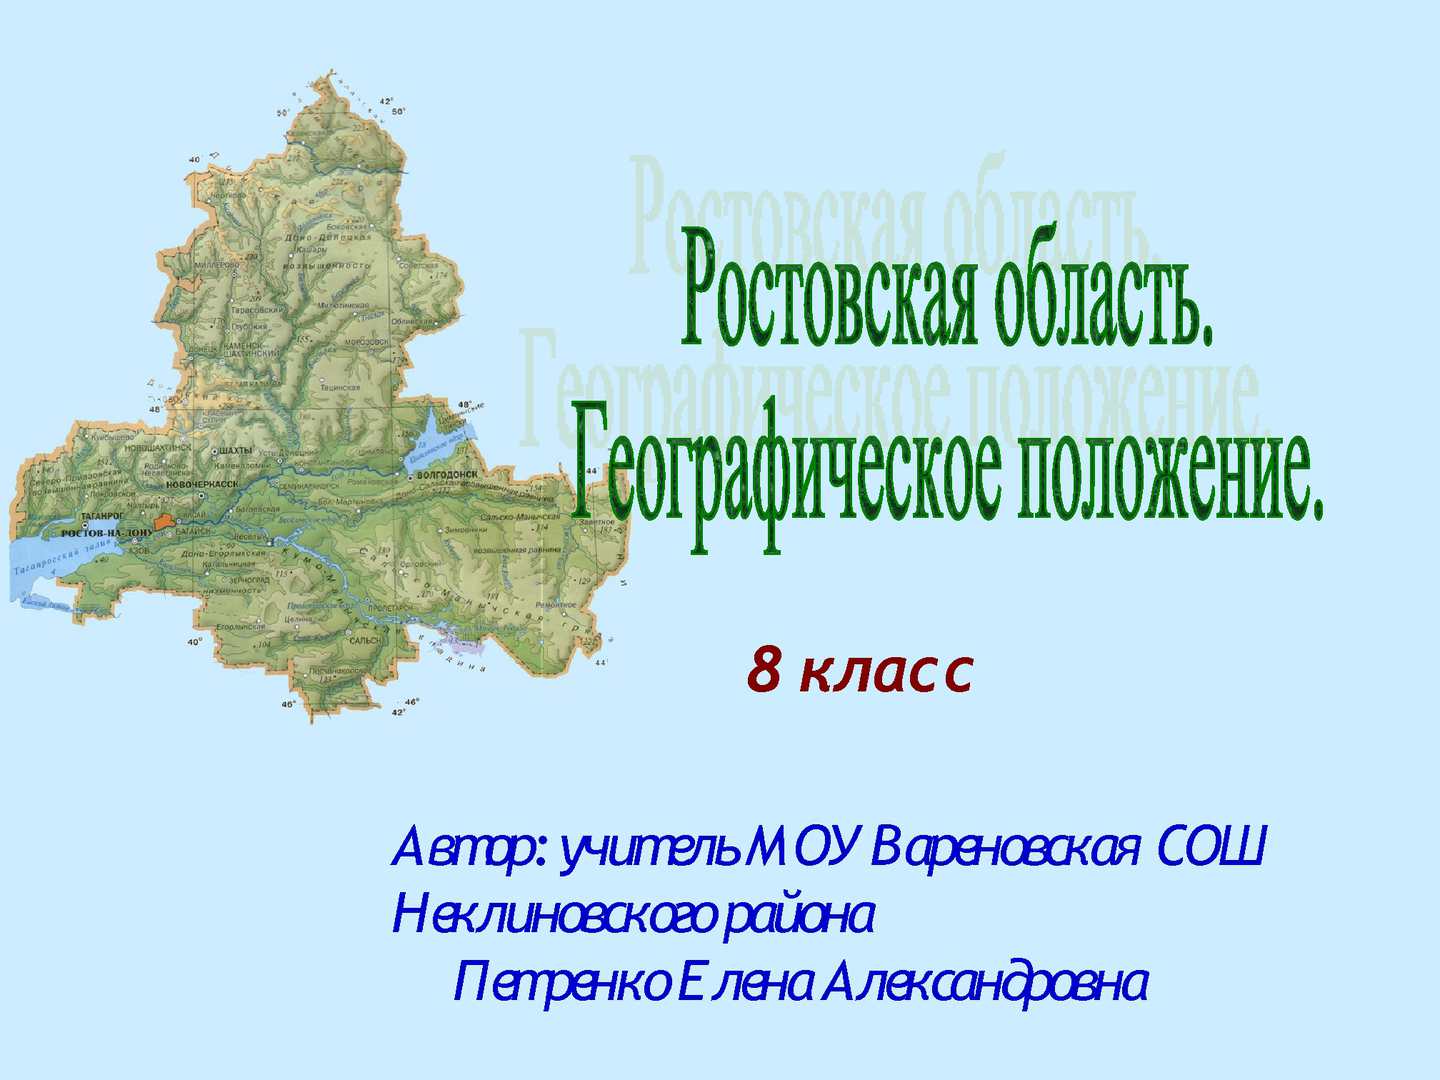 Географическое положение ростовской области: характеристика и особенности